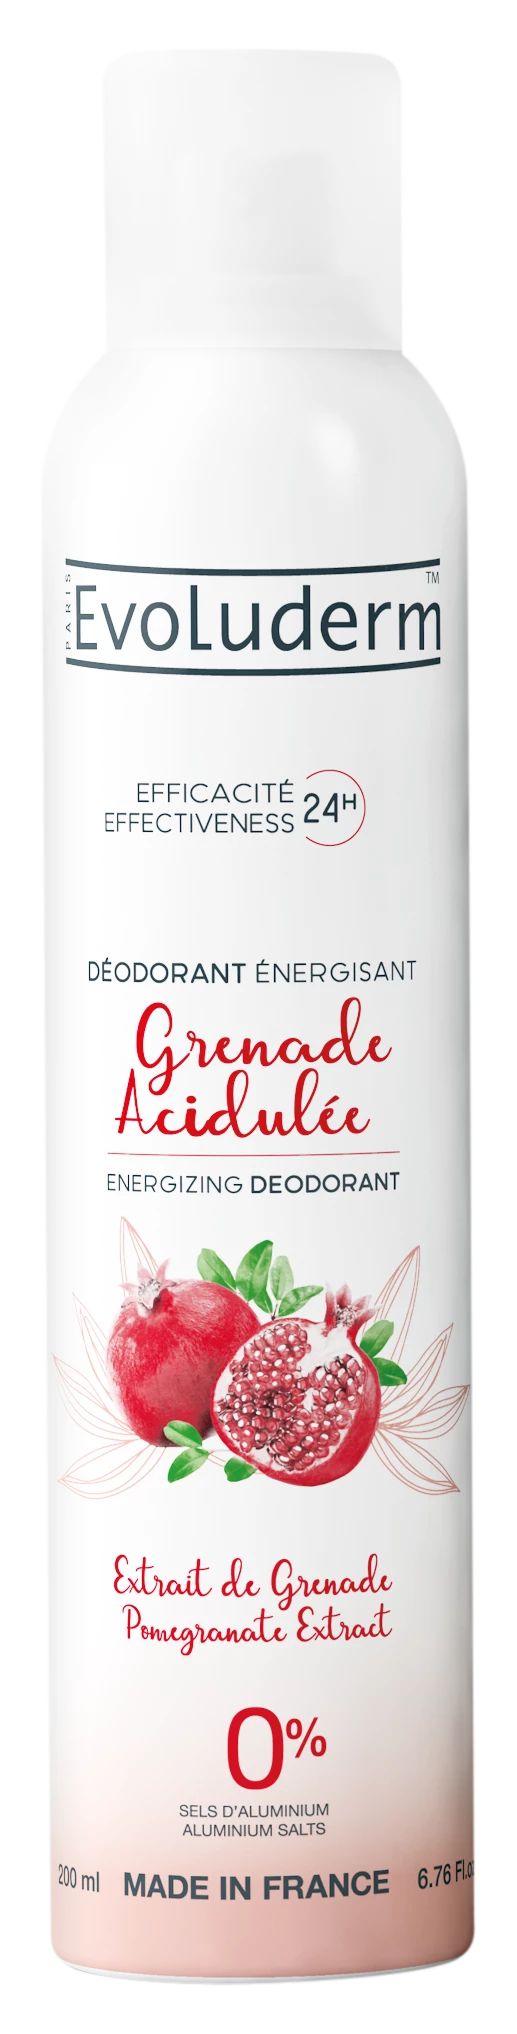 Extrato Genade Desodorante Acidulado Genade, 200ml - EVOLUDERM